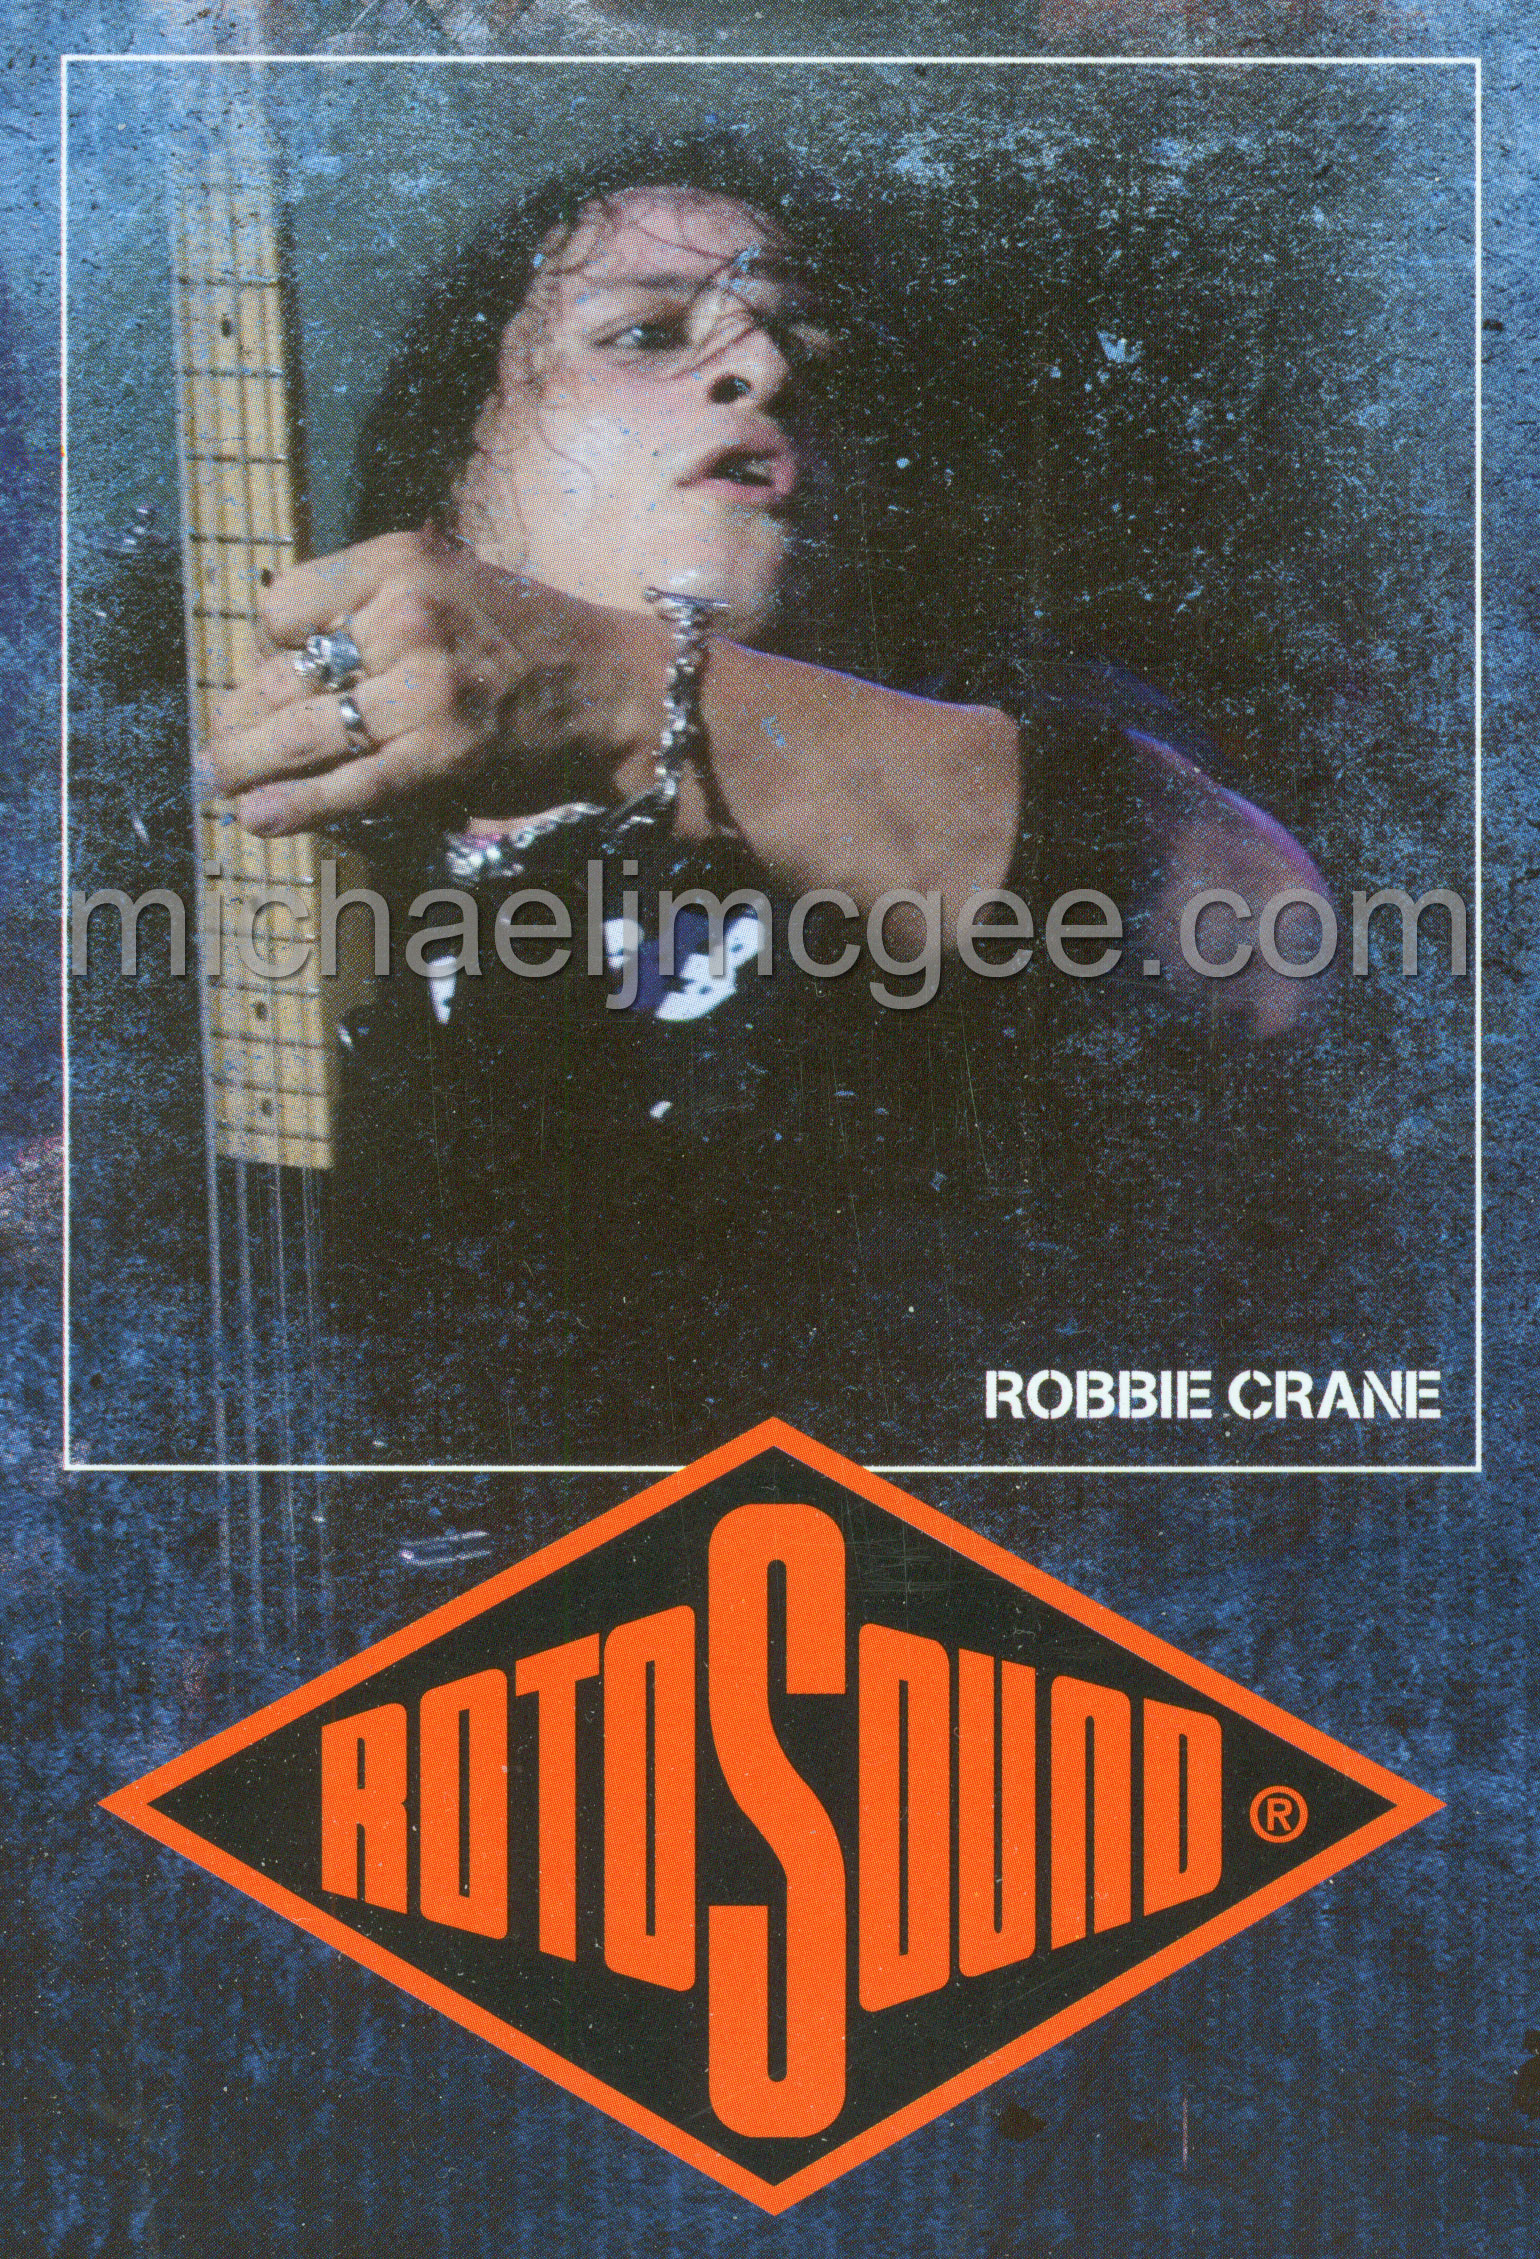 Robbie Crane / michaeljmcgee.com